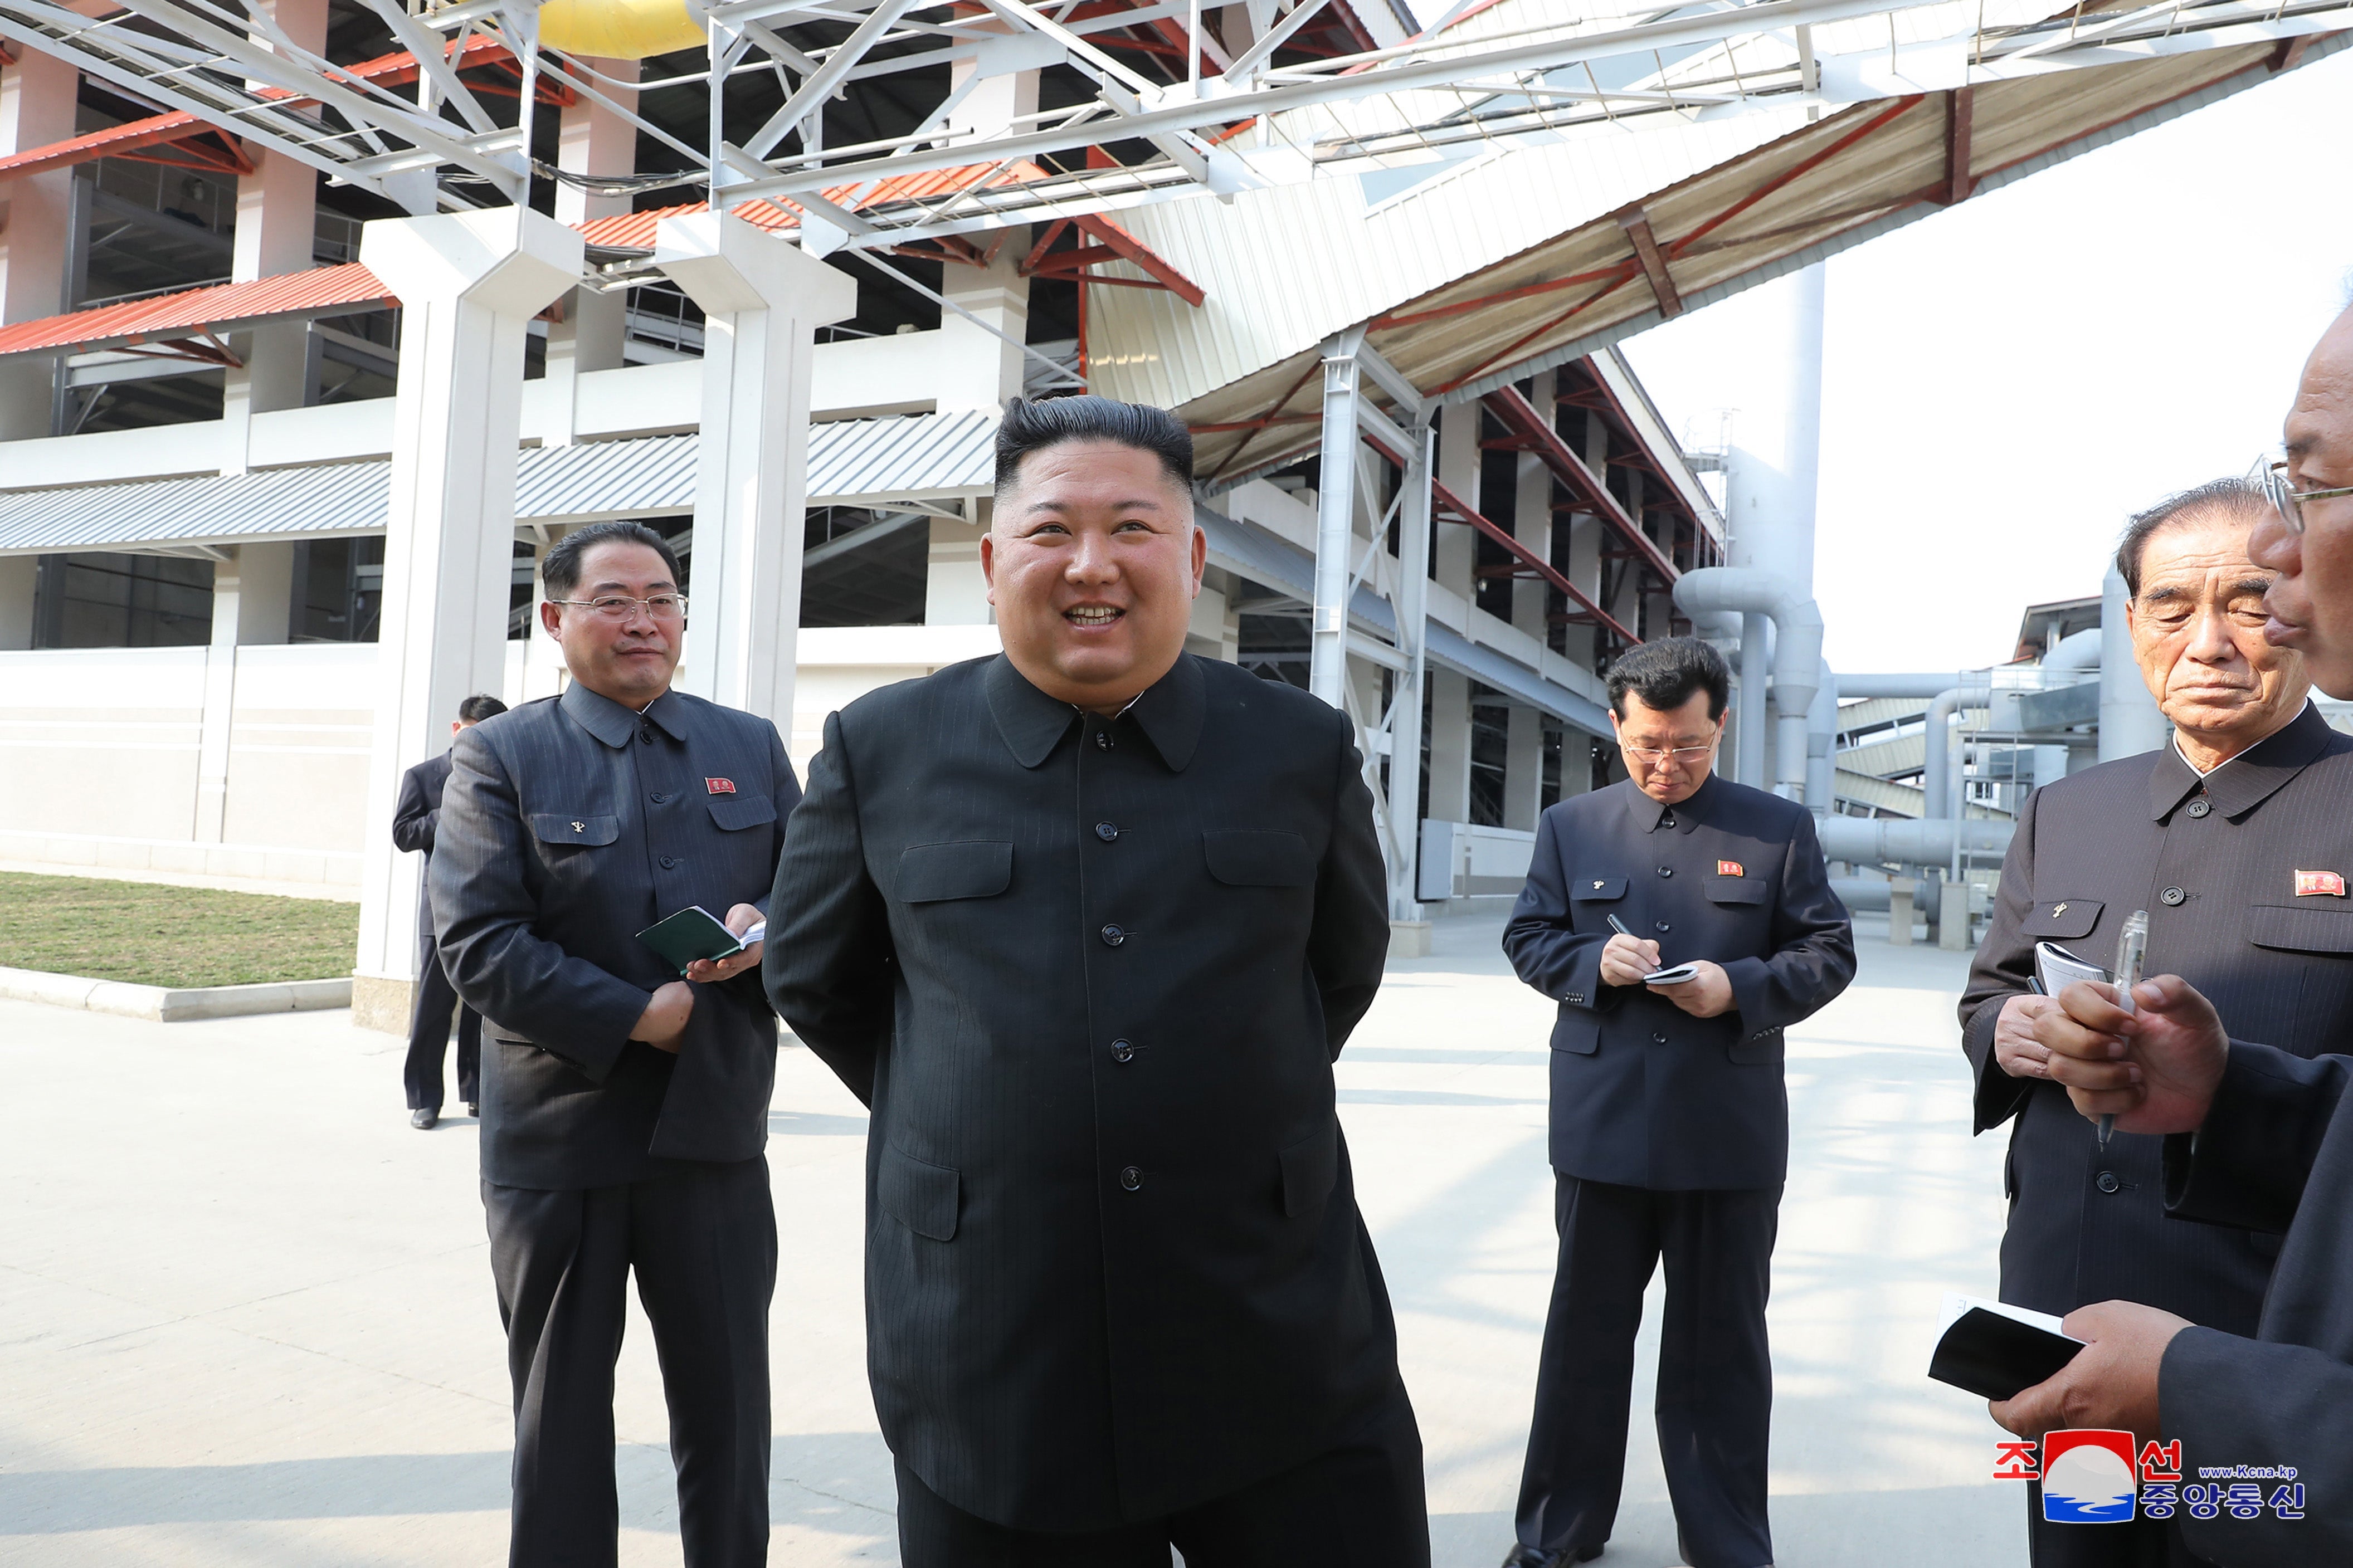 Kim Jong-un and senior officials touring a factory.